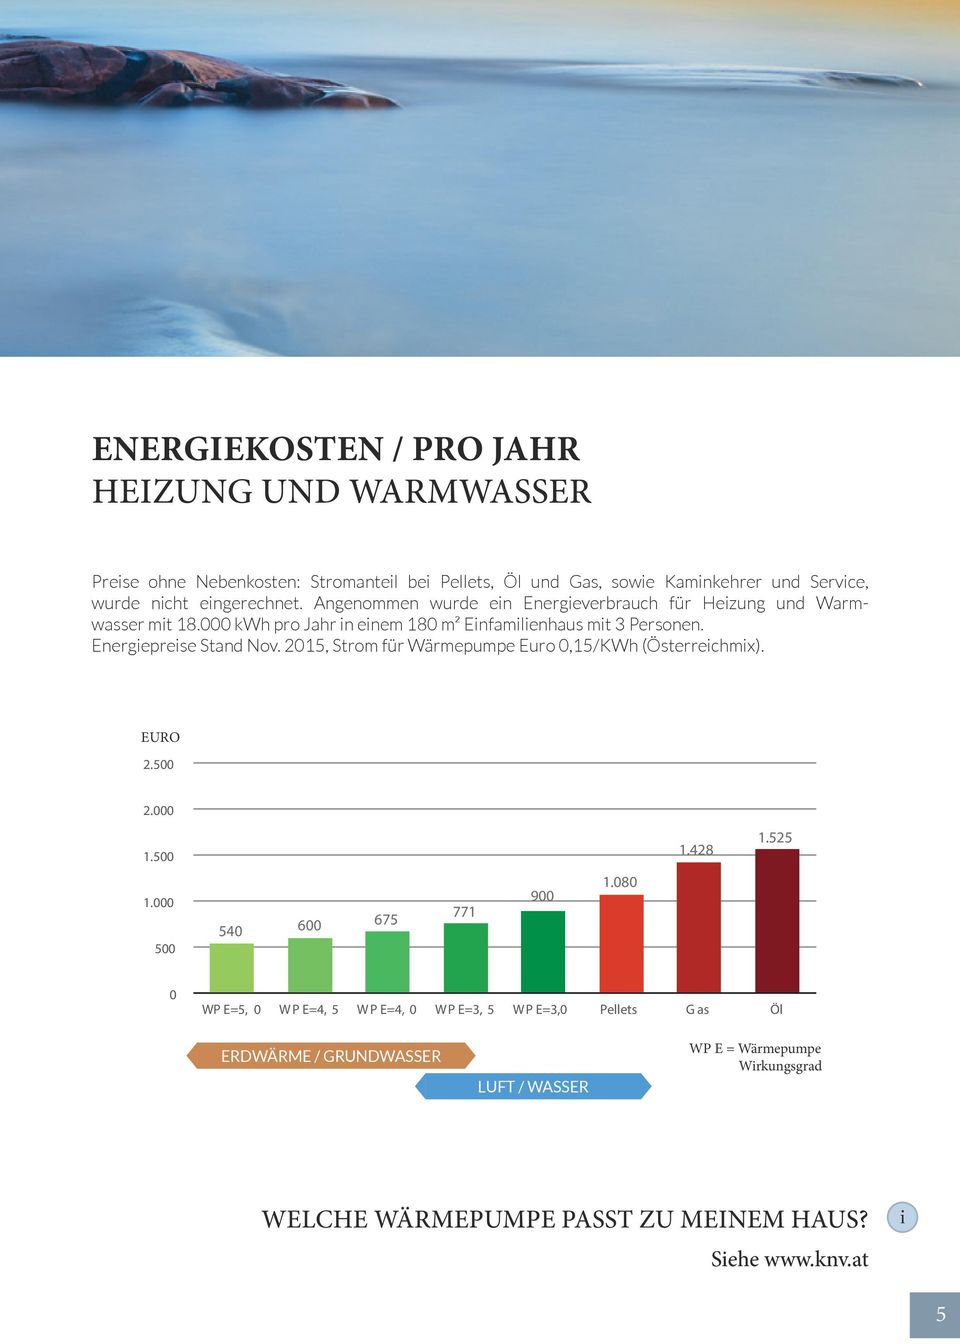 2015, Strom für Wärmepumpe uro 0,15/KWh (Österreichmix). RNNSTO KOSTN IN UR PRO JHR, HIZUN UN WRMWSSR uro 2.500 2.000 1.500 1.000 500 0 1.525 1.428 1.